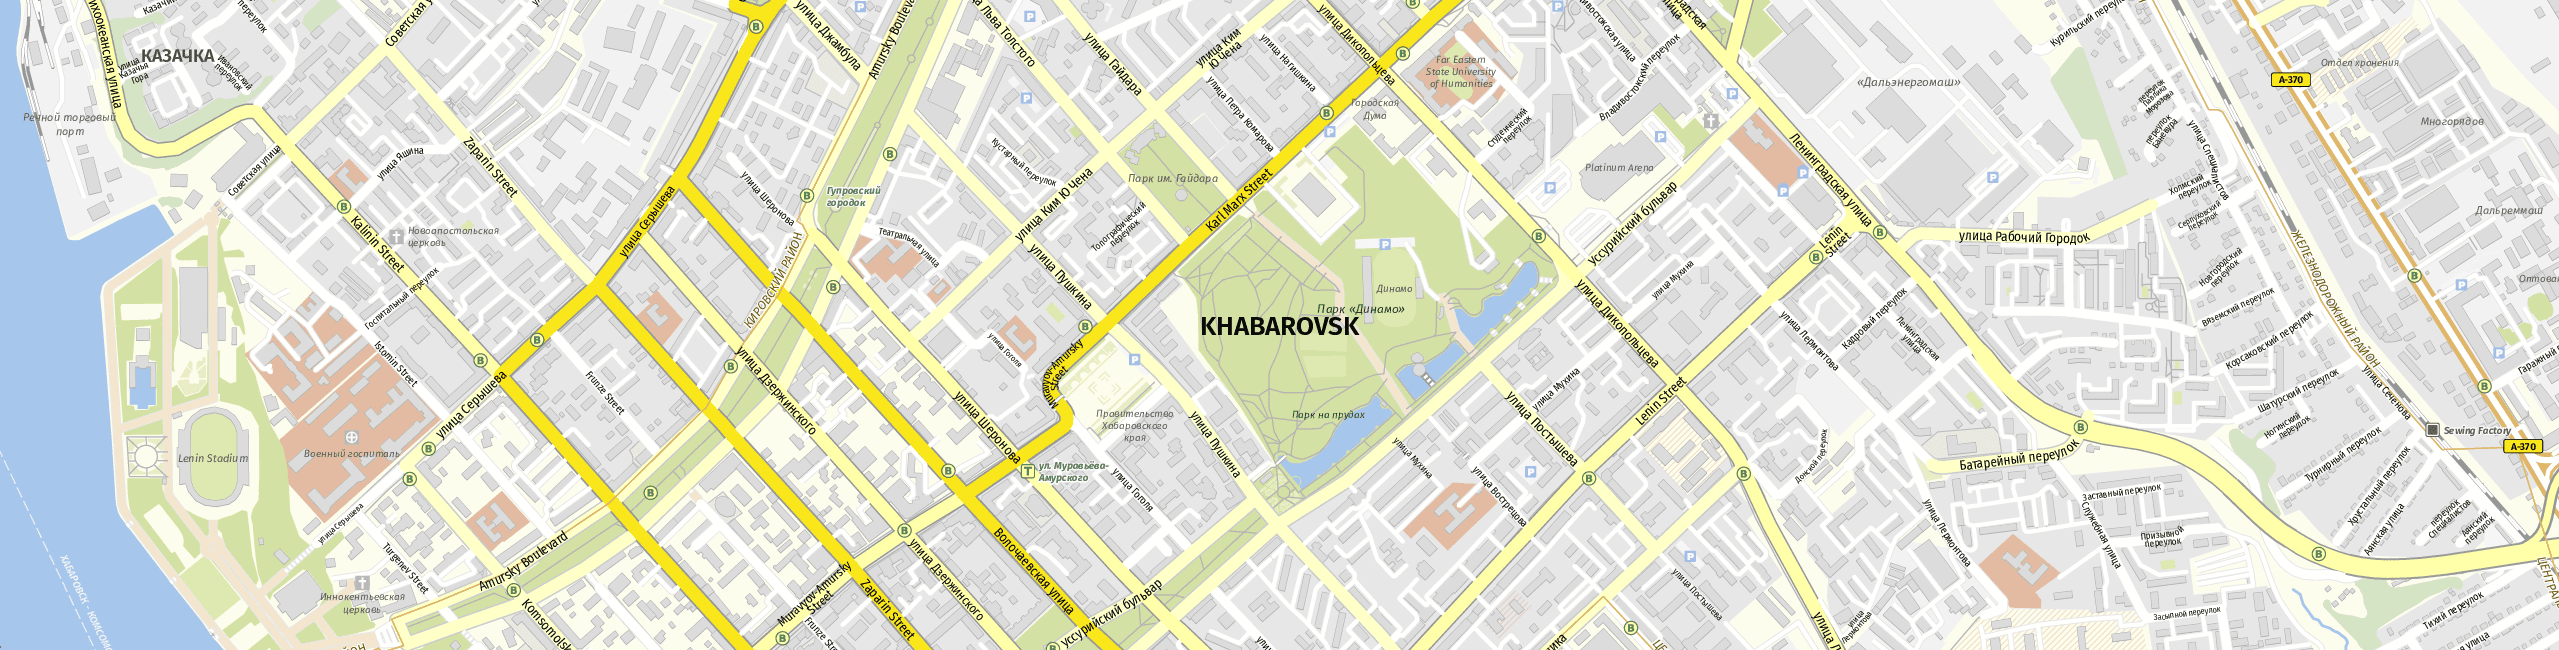 Stadtplan Chabarowsk zum Downloaden.